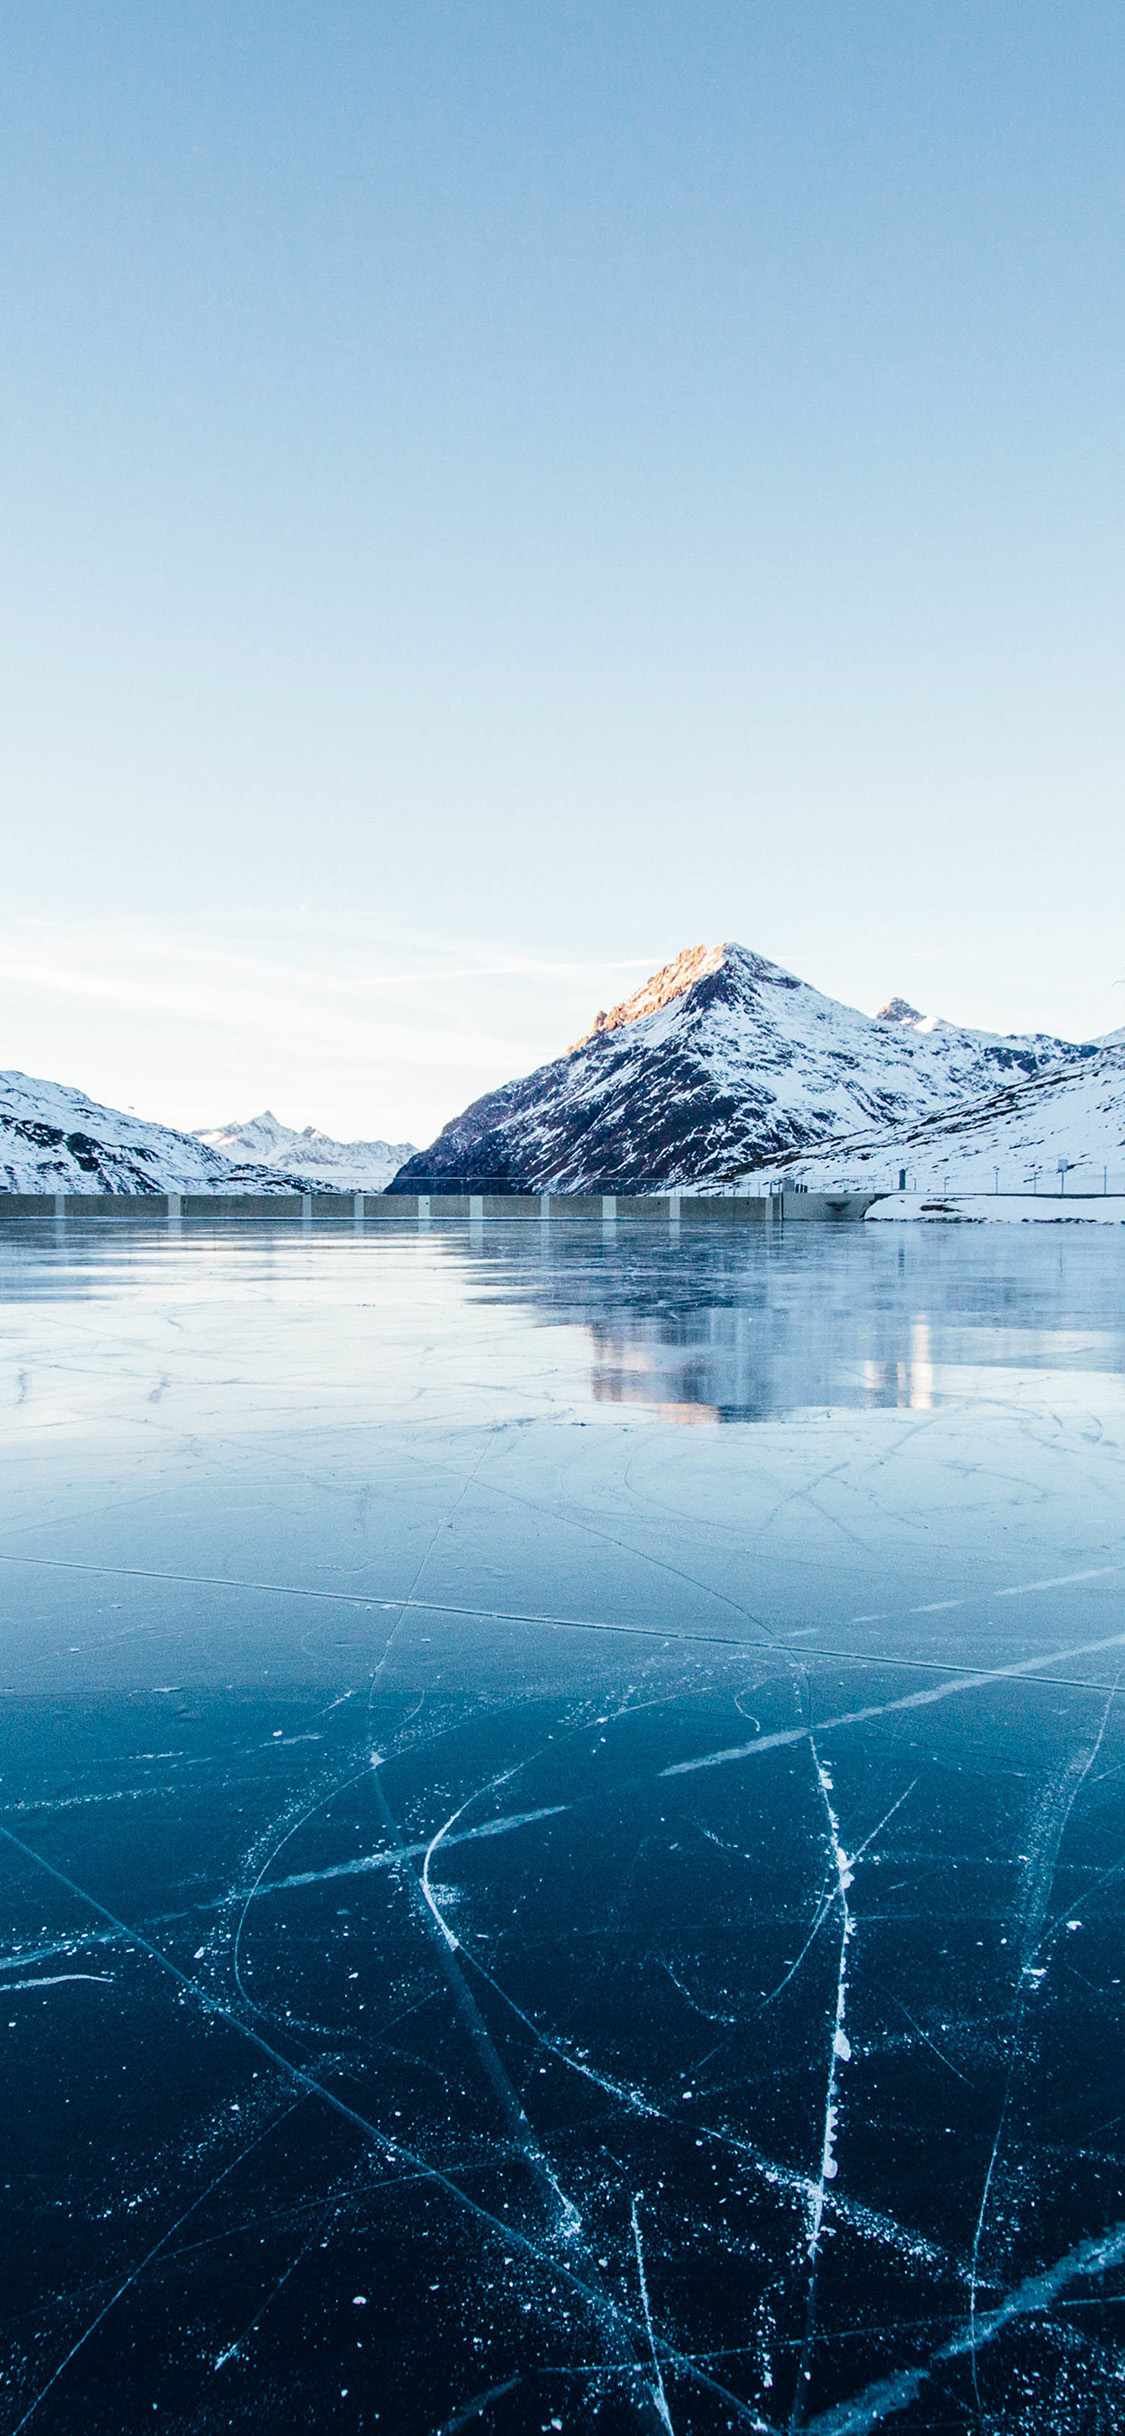 雪山下结冰的湖面唯美风景手机壁纸 天然的溜冰场